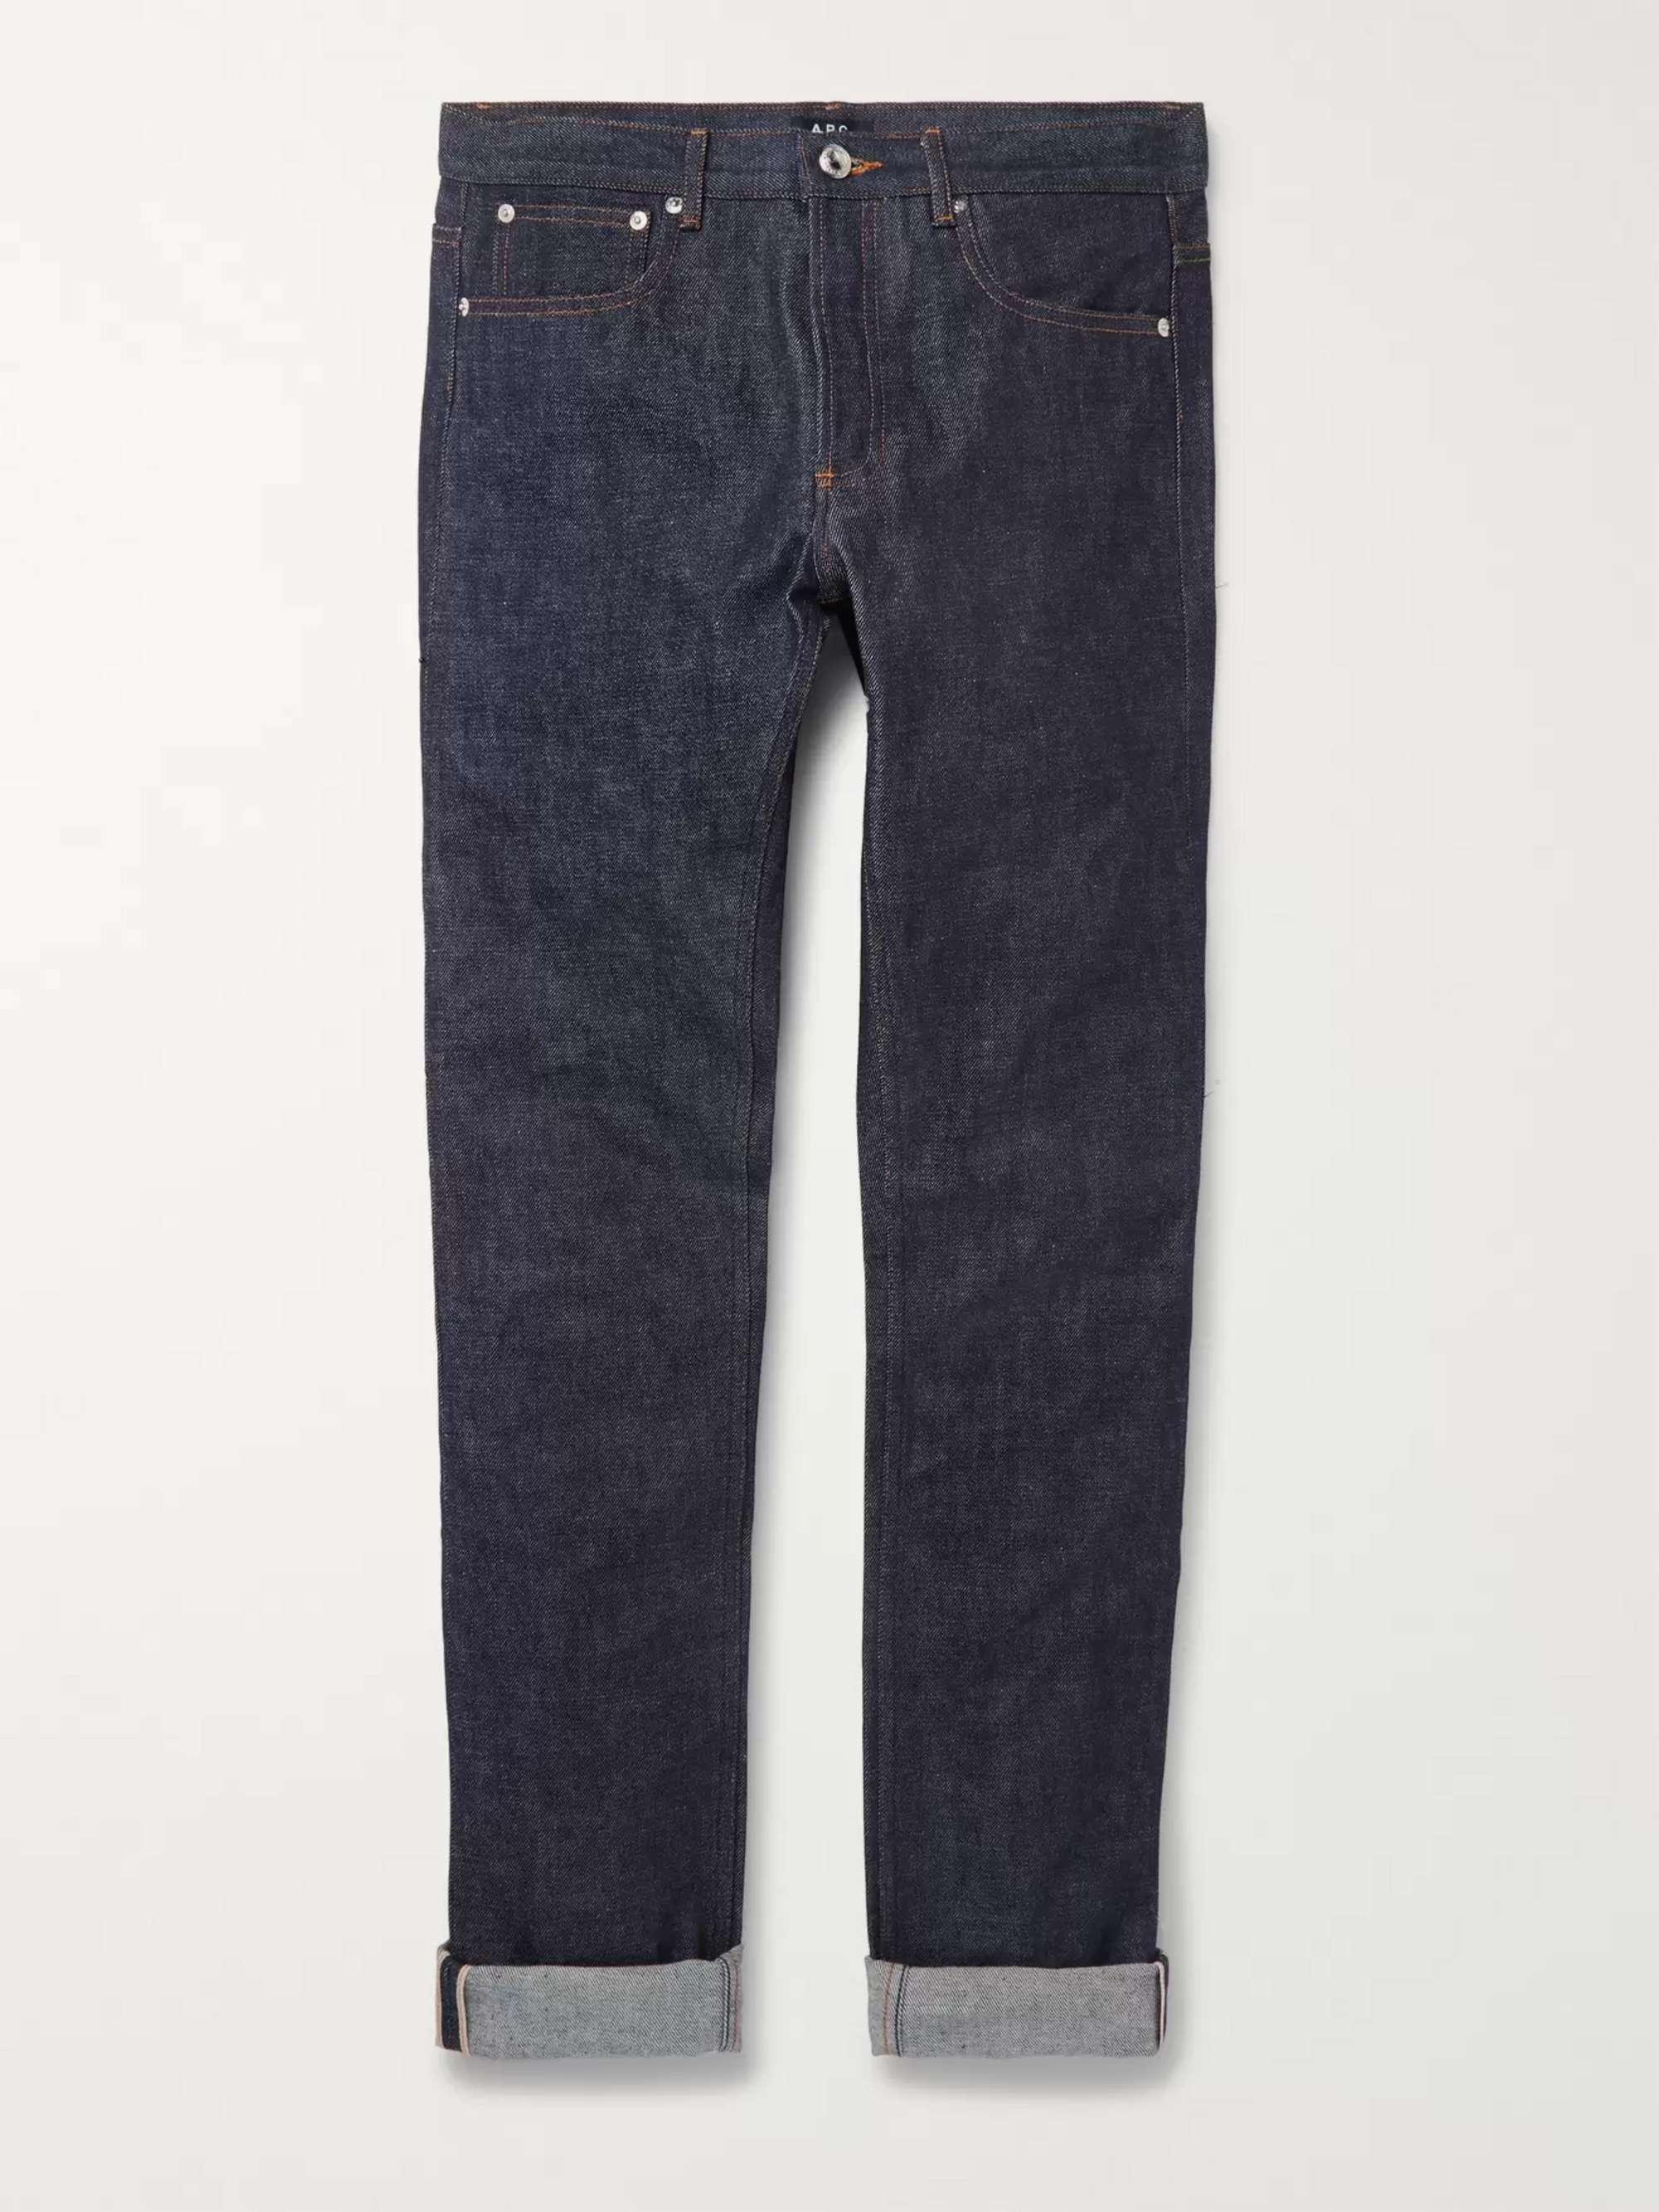 아페쎄 남성 청바지 (쁘띠 스탠다드 슬림핏) A.P.C. Petit Standard Slim-Fit Dry Selvedge Denim Jeans,Indigo